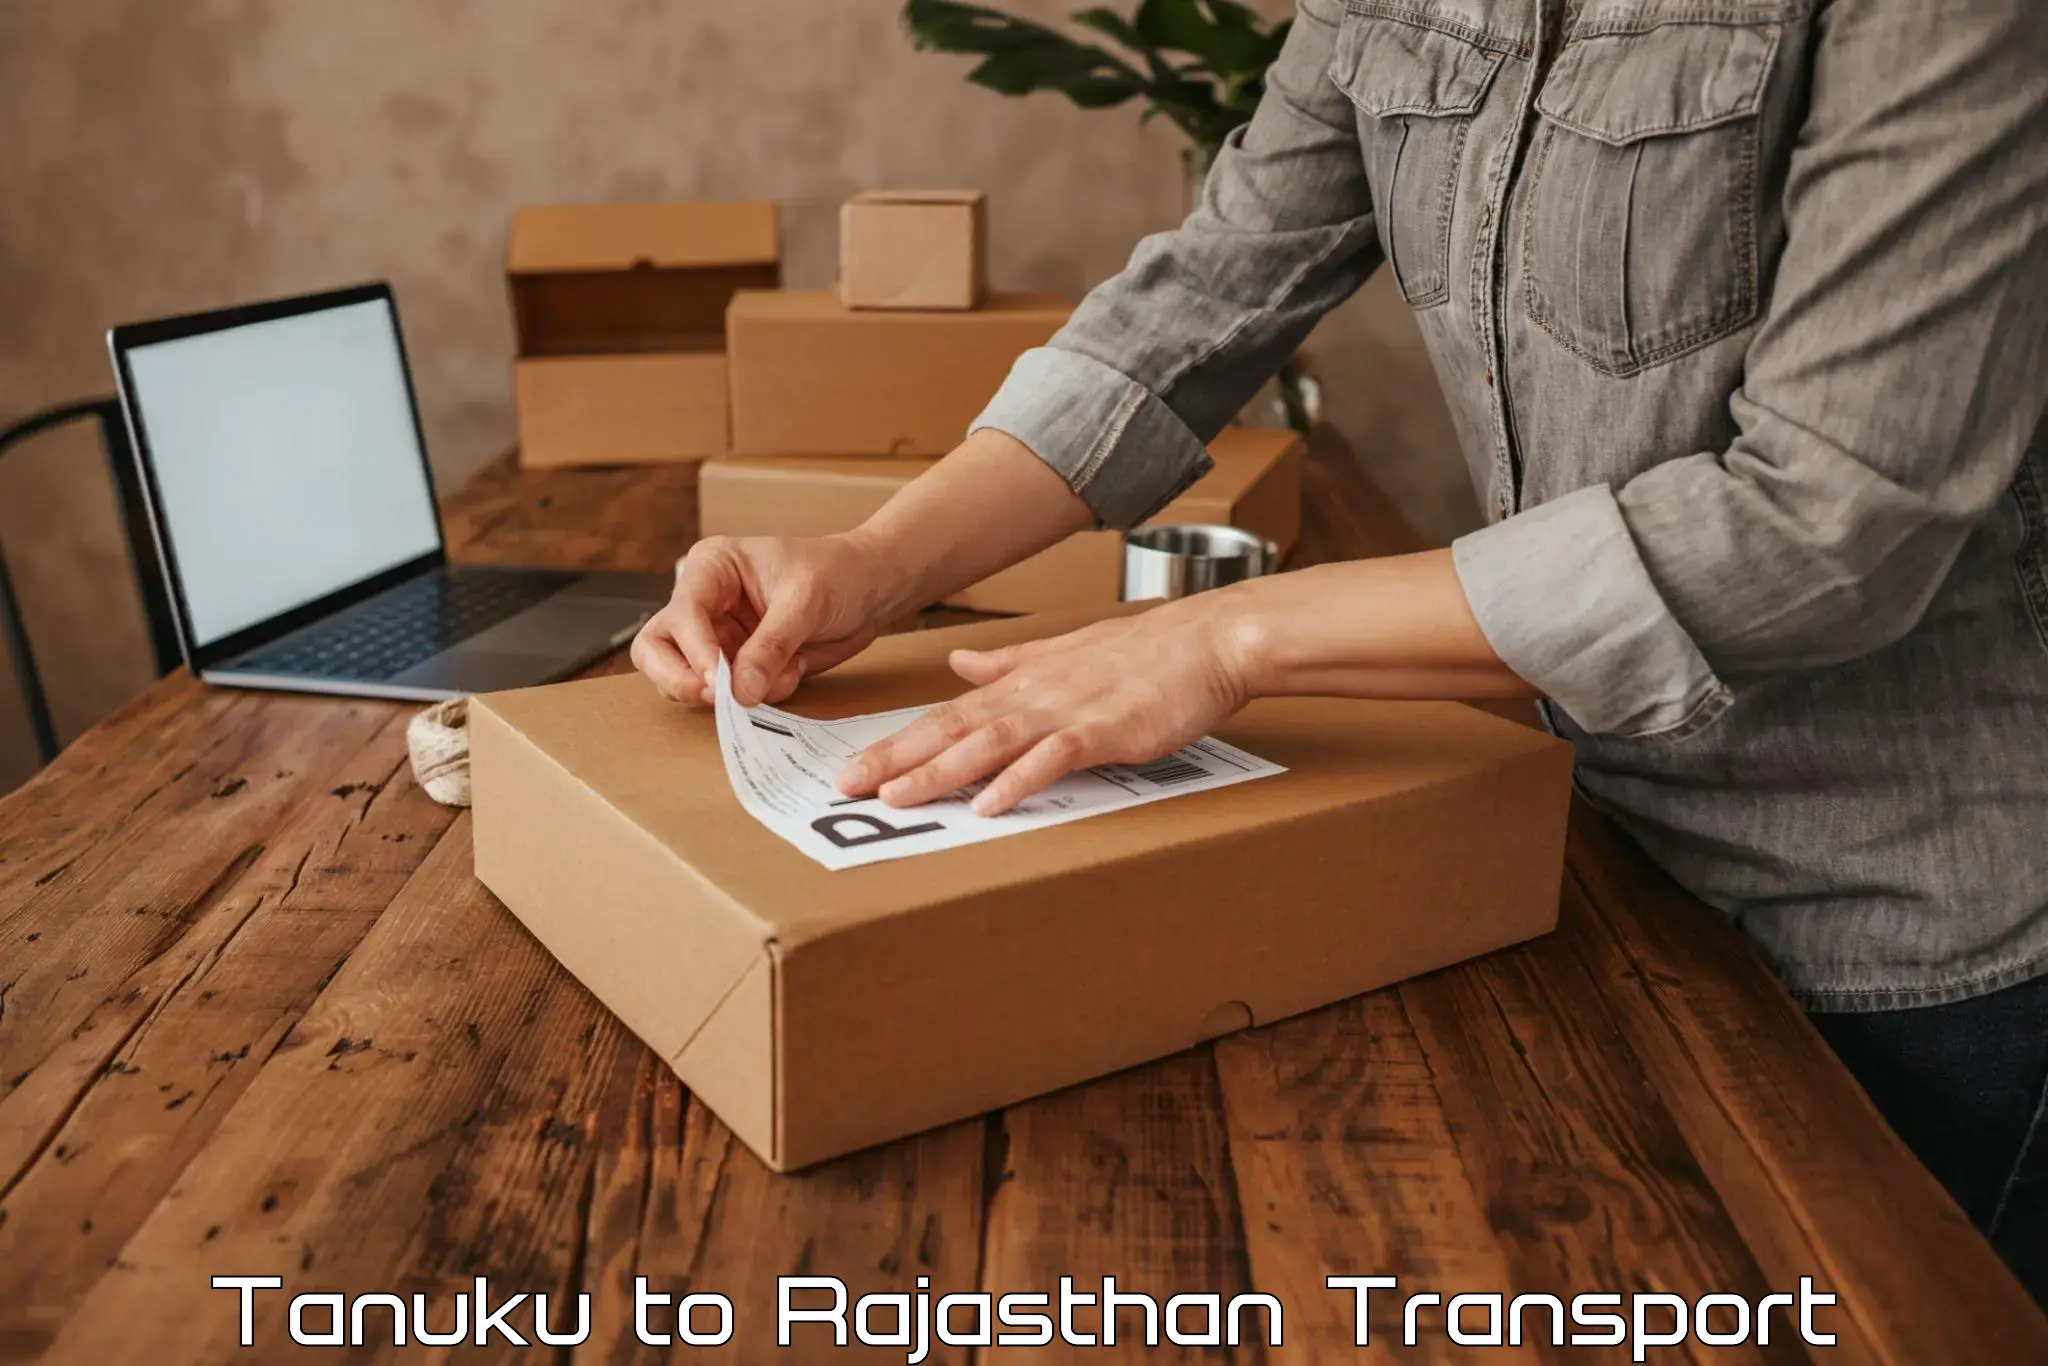 Transport in sharing in Tanuku to Rajasthan